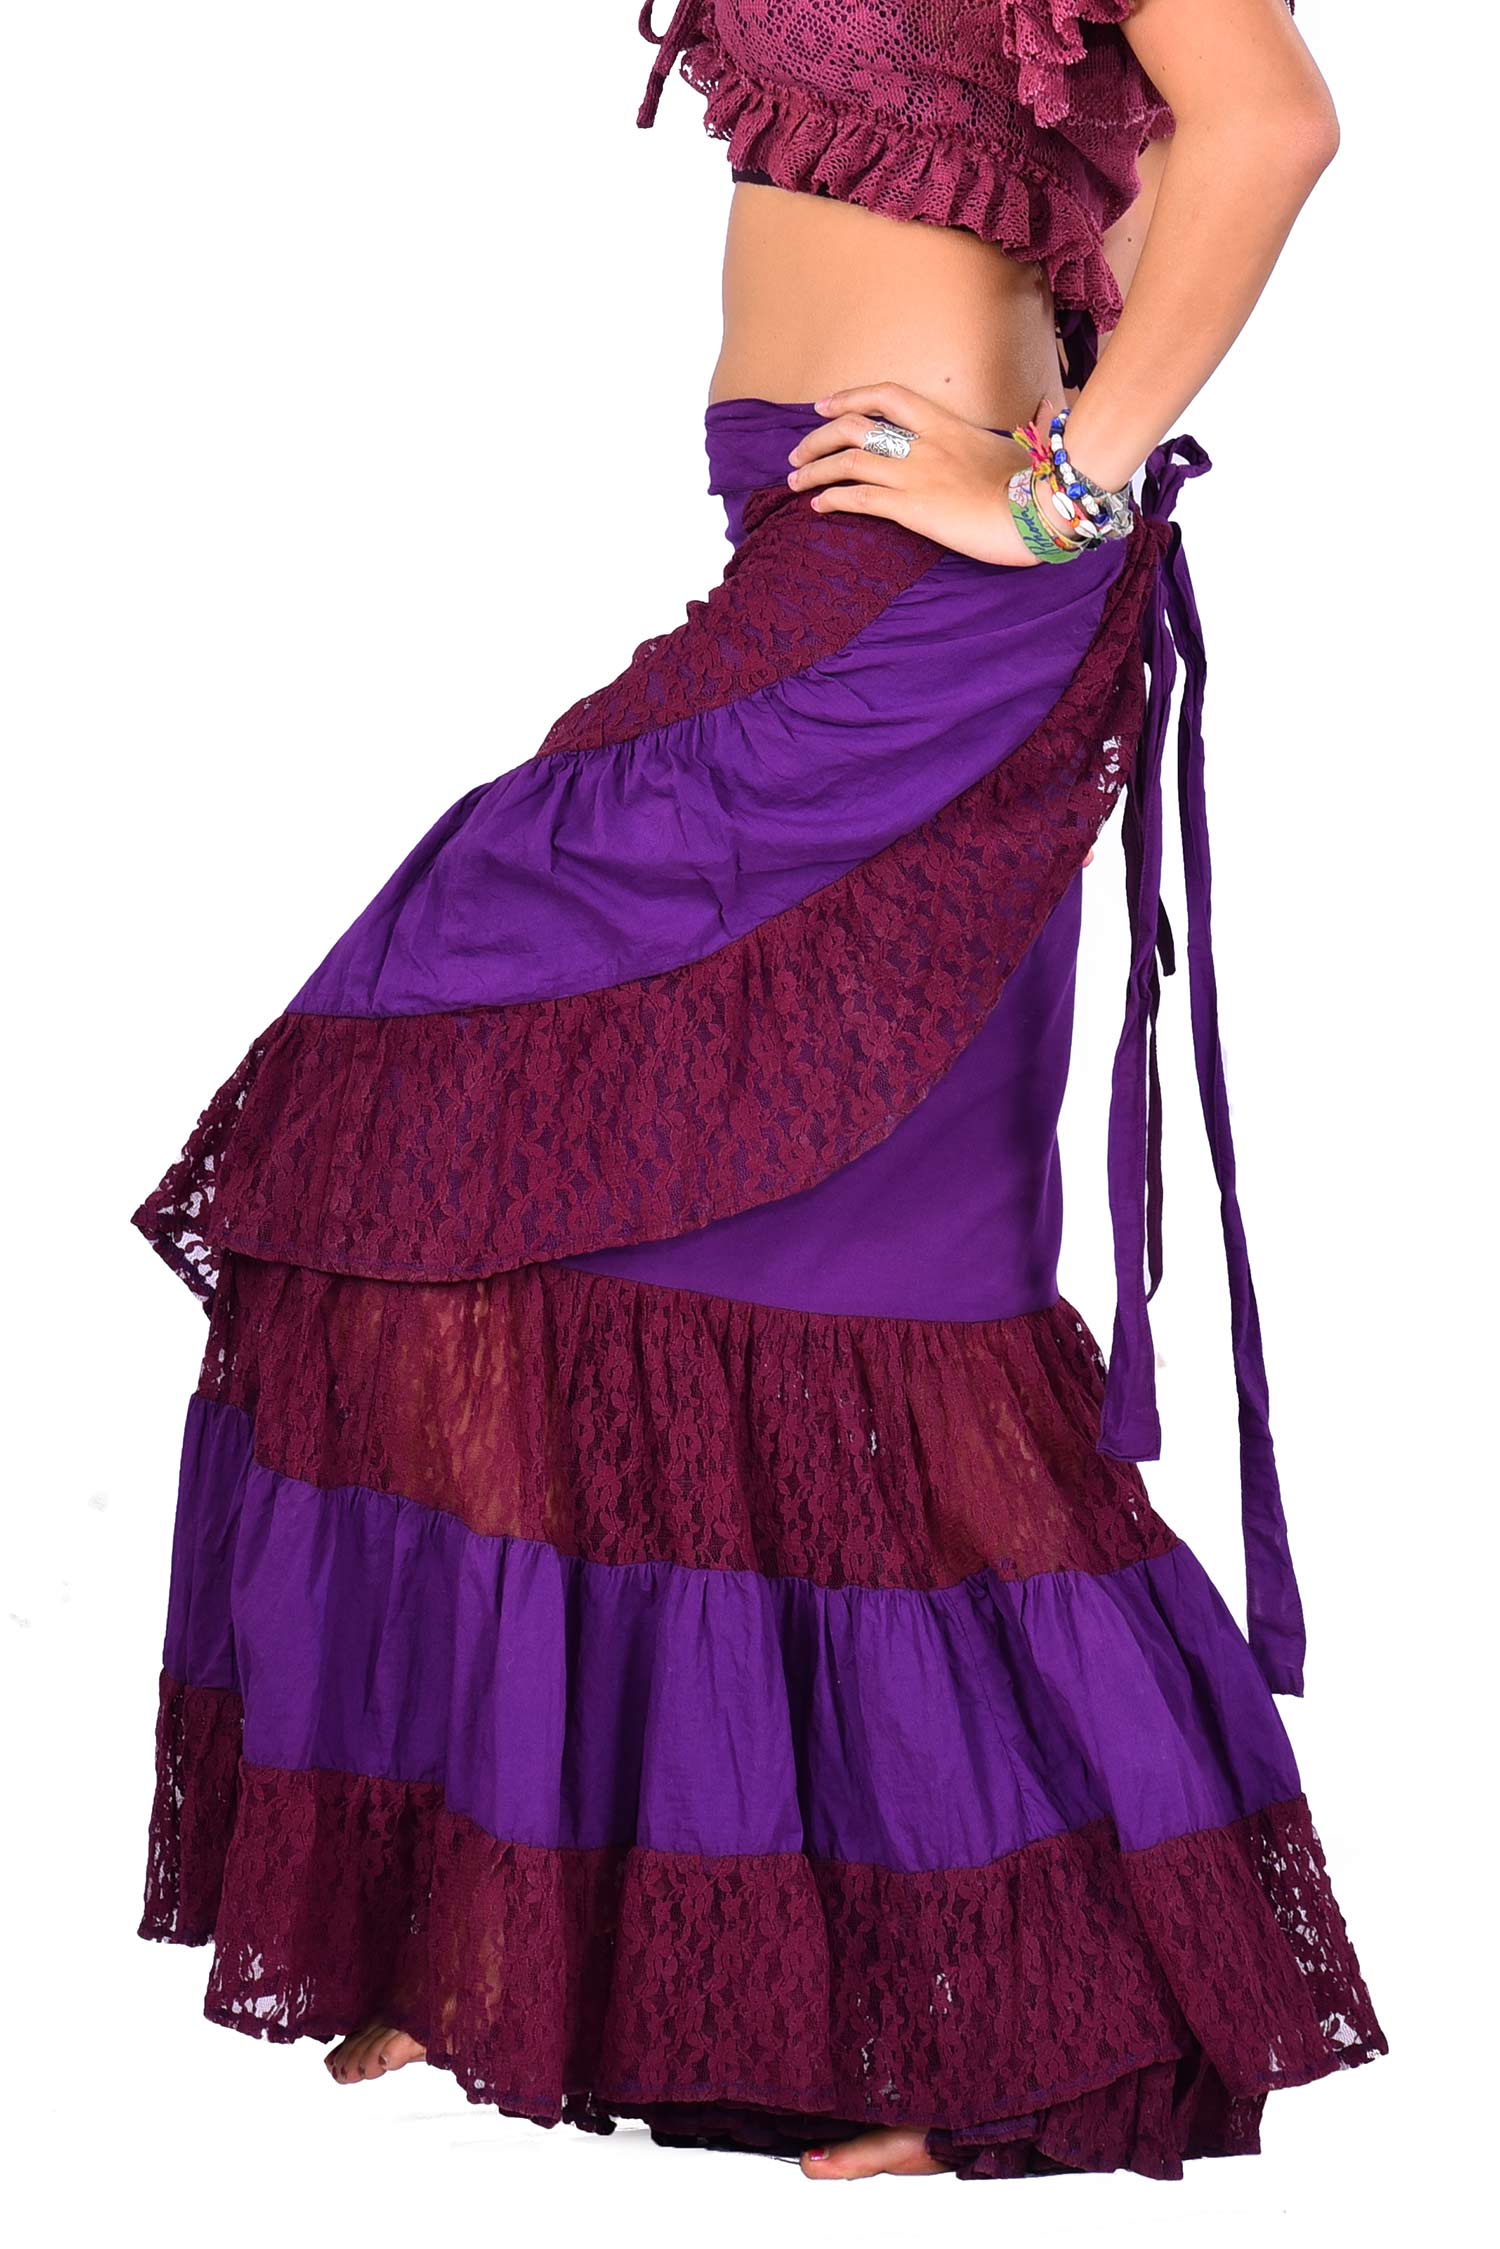 Long Gypsy Boho Skirt, Hippy Lace Wraparound Skirt | Altshop UK